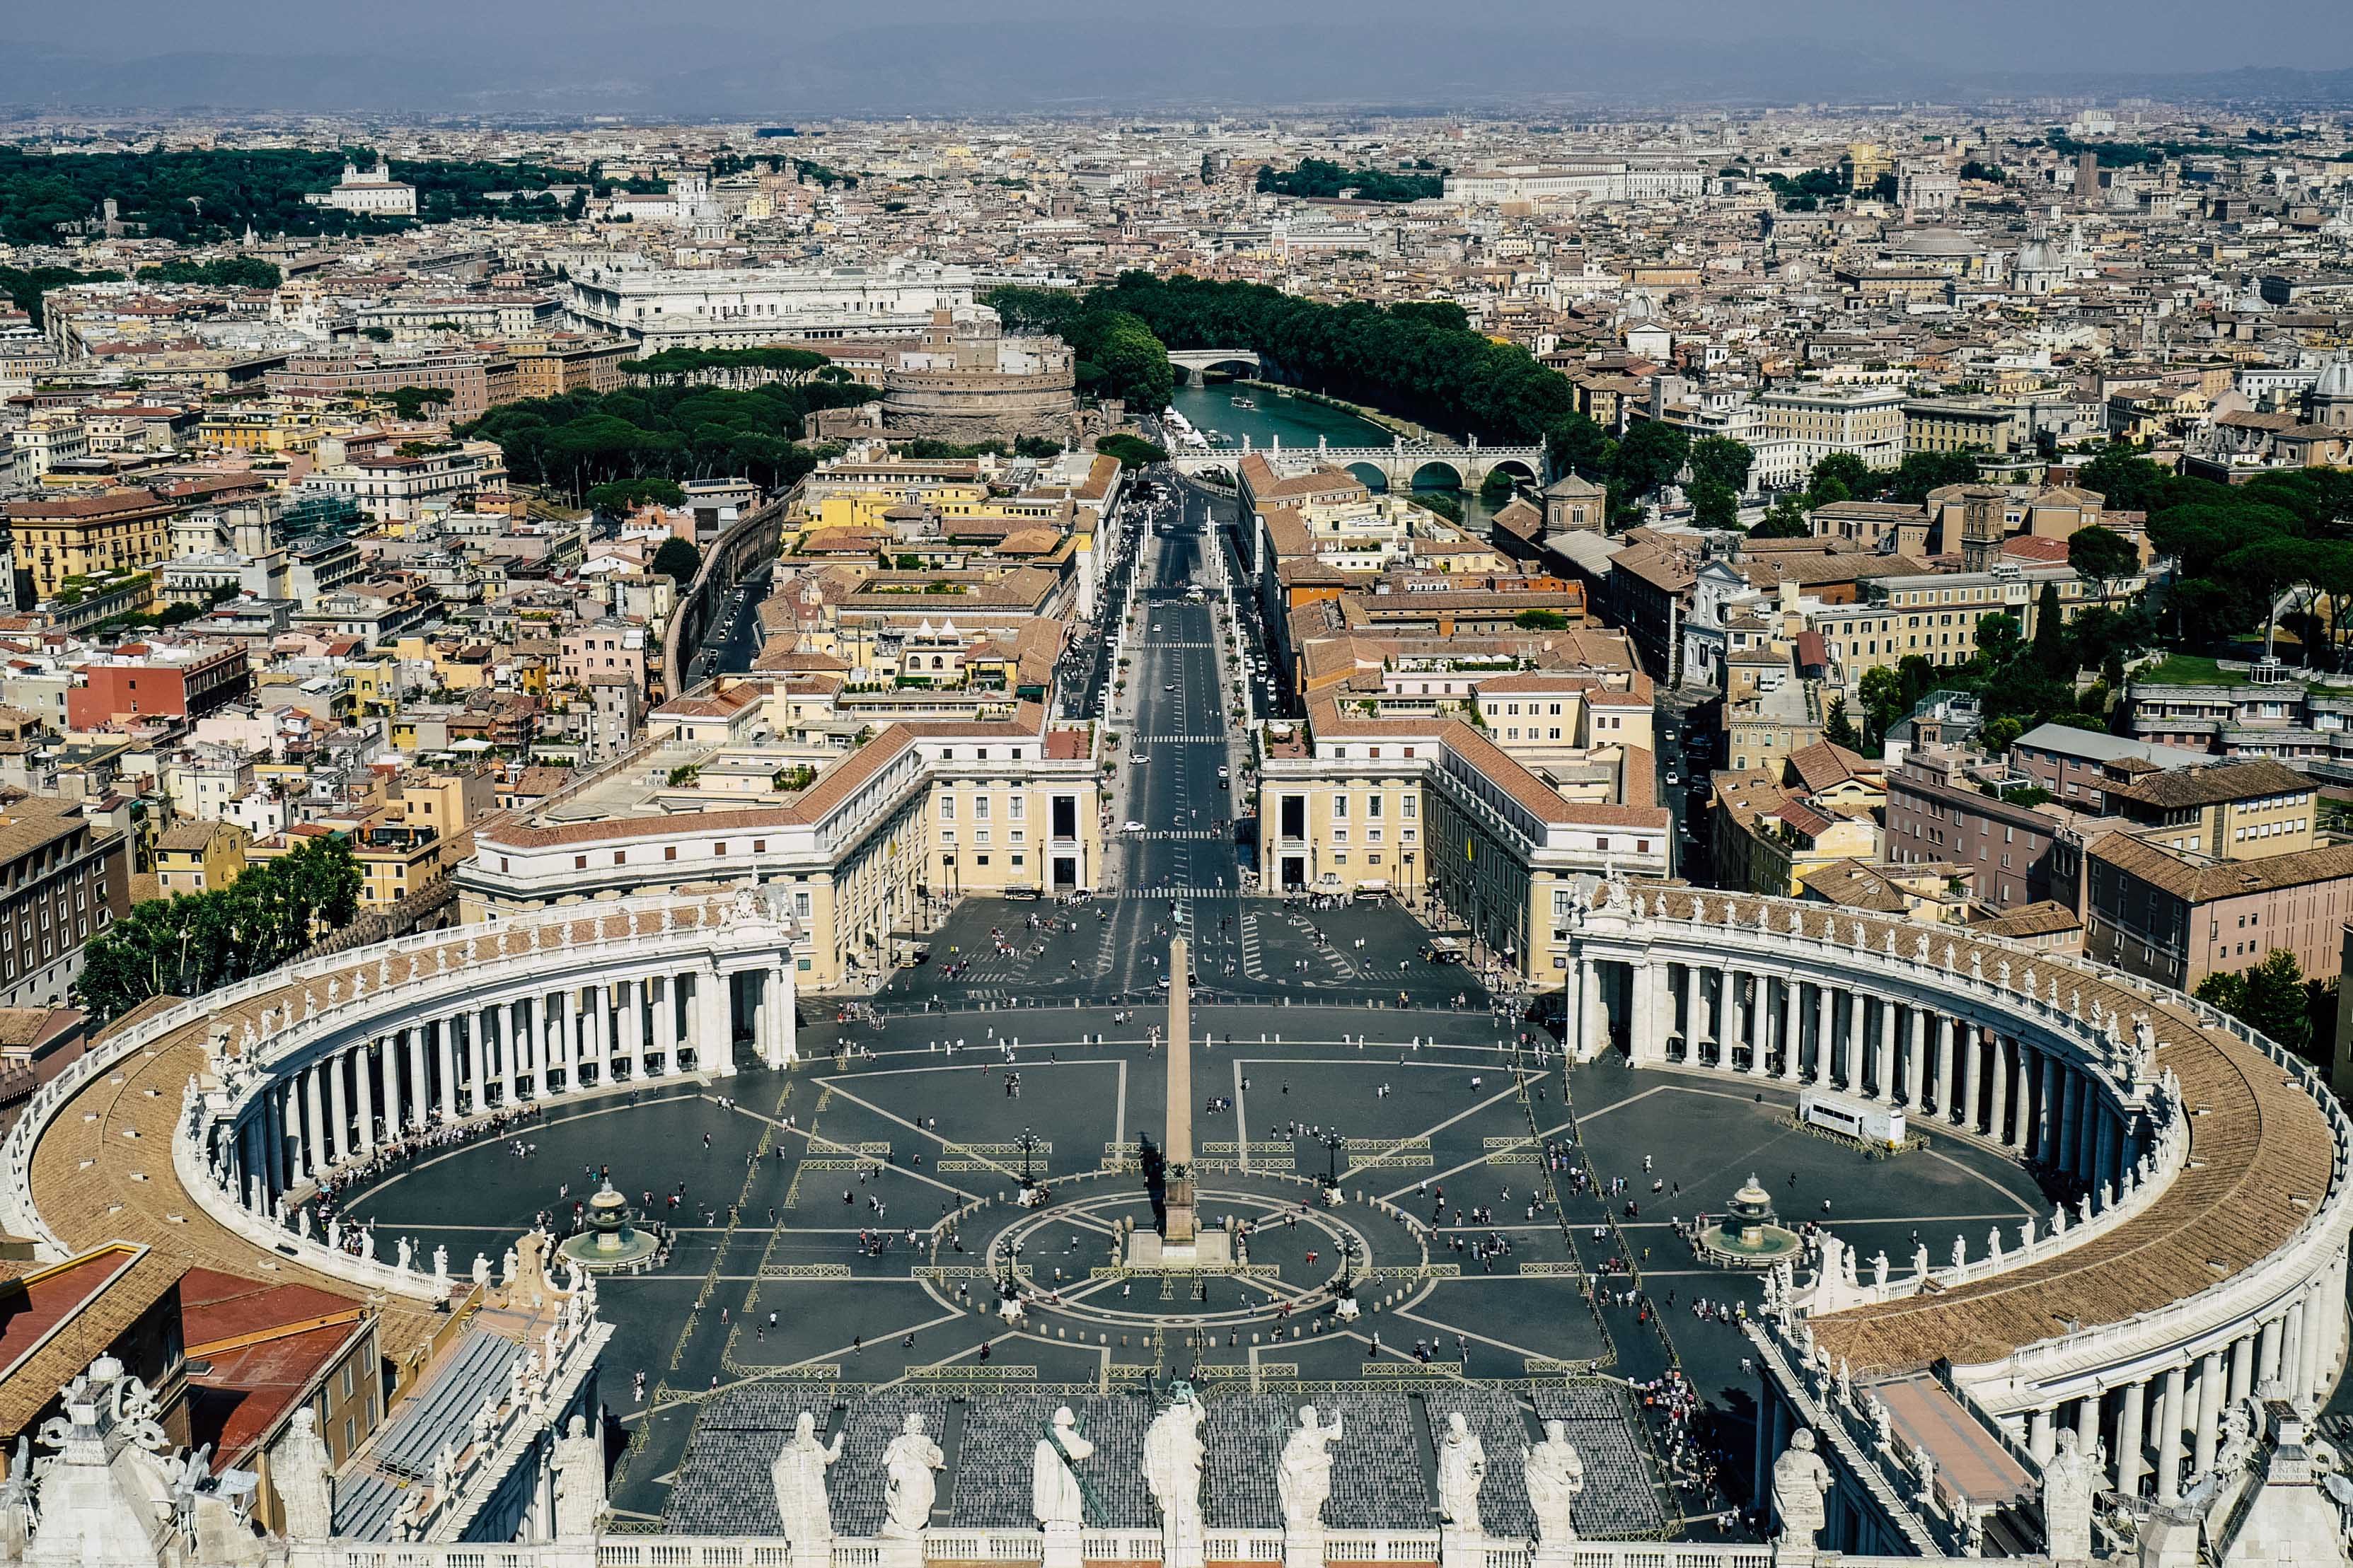 Das Bild zeigt den Petersplatz in Rom, umgeben von der beeindruckenden Architektur der Vatikanstadt und der Stadt Rom im Hintergrund. Der Platz ist prominent dargestellt, mit seiner ikonischen ovalen Form, umgeben von einer Kolonnade. In der Mitte des Platzes steht ein Obelisk. Die Straßen führen zum Platz sind gut organisiert und symmetrisch. Die Architektur des Vatikans ist weiß und majestätisch, mit Statuen, die die Oberseite der Kolonnaden schmücken. Im Hintergrund sieht man die dichte Bebauung Roms mit seinen charakteristischen gelben und braunen Gebäuden. Der Fluss Tiber schlängelt sich durch die Stadt im Hintergrund. Aufgenommen vom Dach des Petersdoms. Ein Perfektes Wandbild für ein italienisches Restaurant oder ein Wohnzimmer.